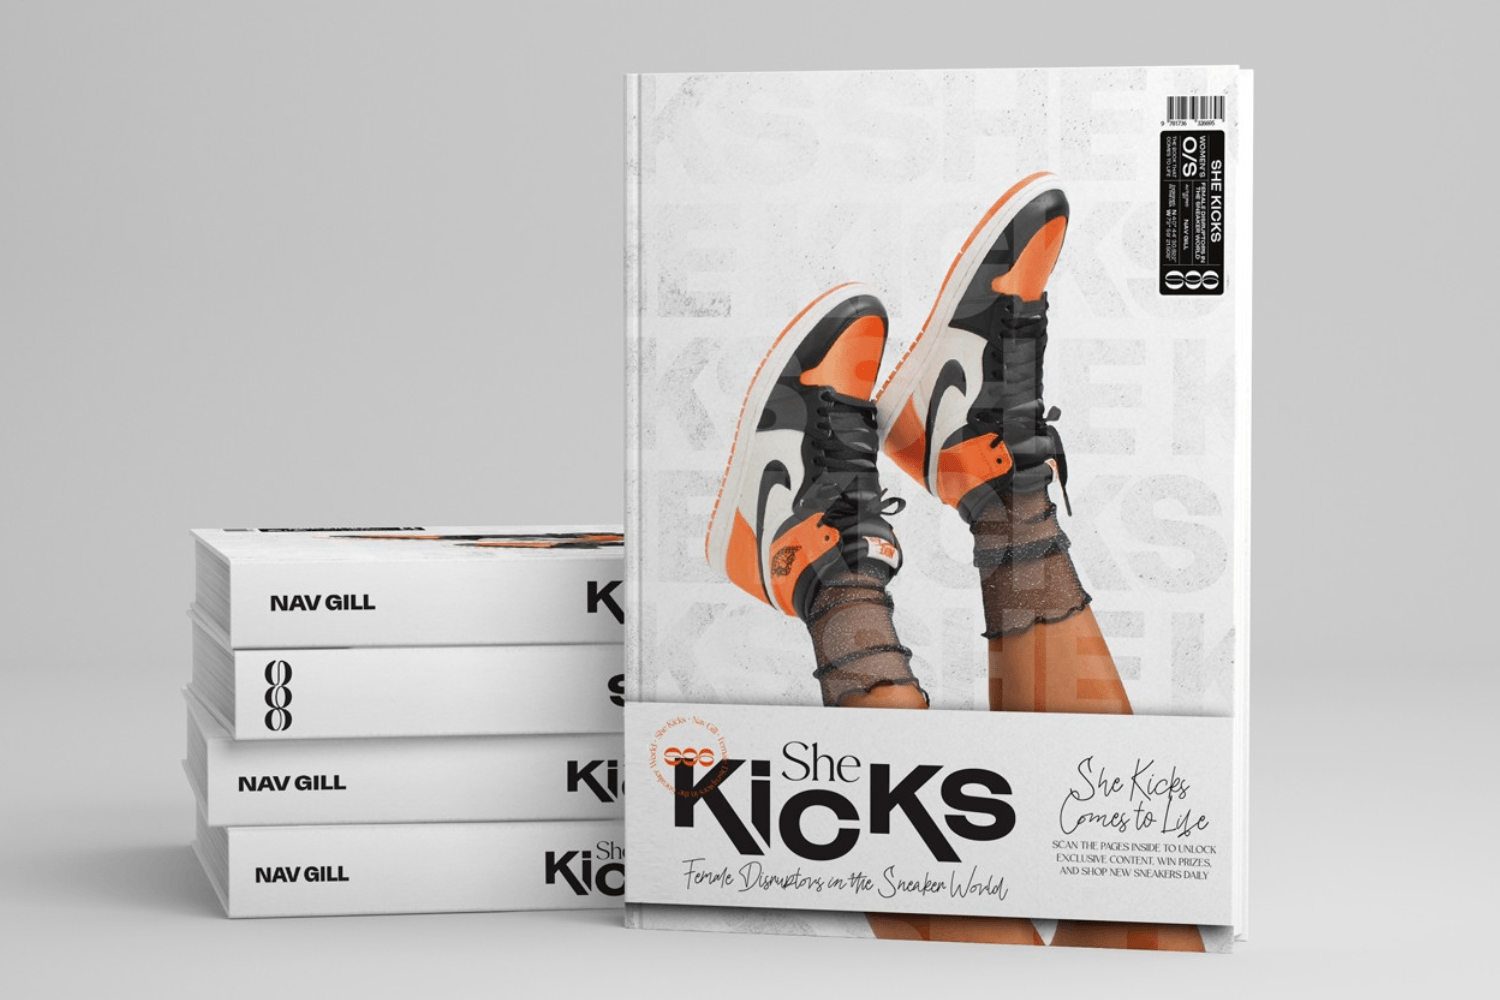 Sneaker book 'She Kicks' highlights women in the sneaker scene - Interview Sanne Poeze